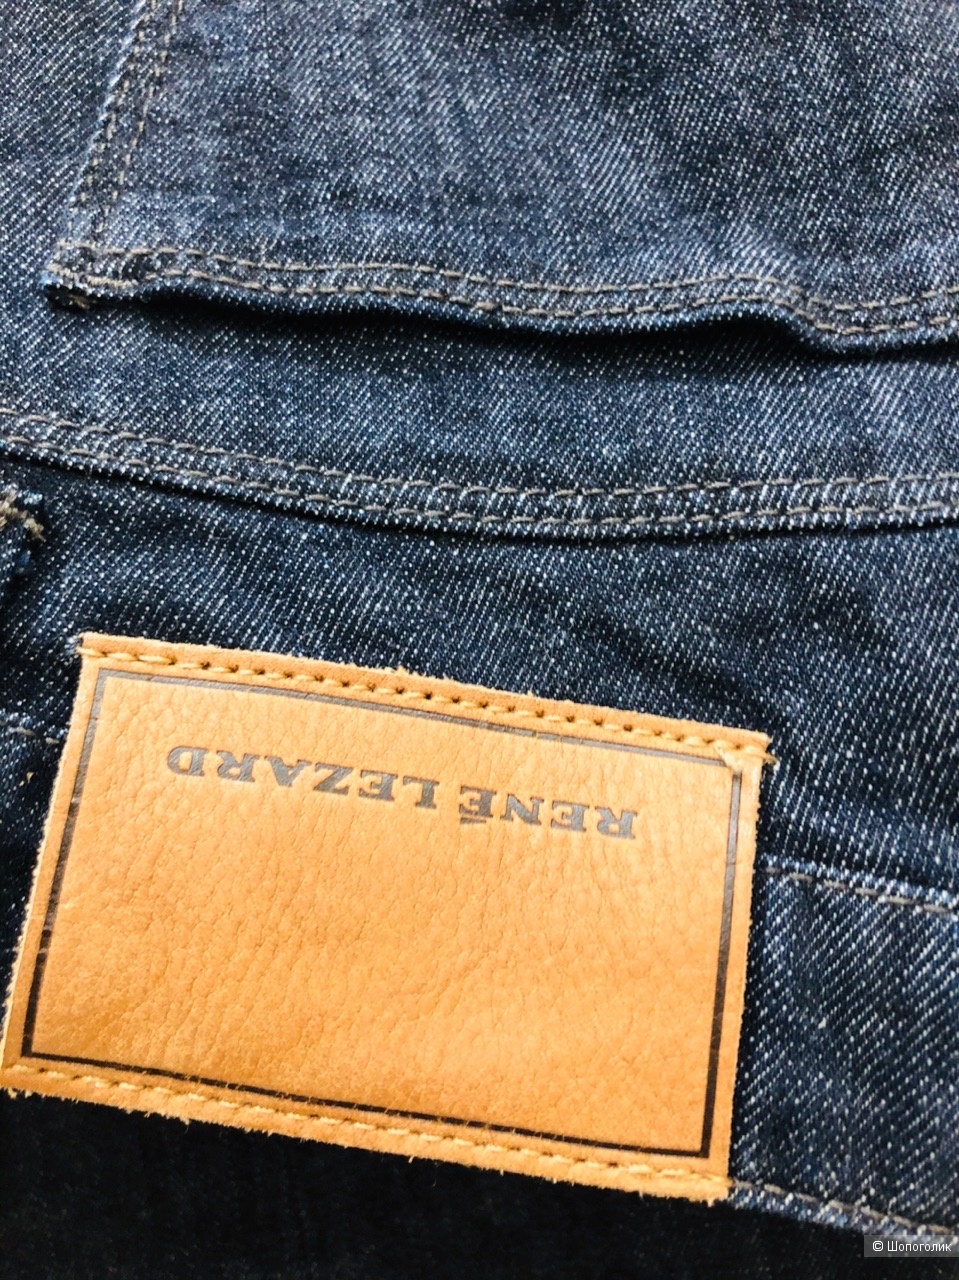 Джинсовые брюки RENÉ LEZARD Размер 36.